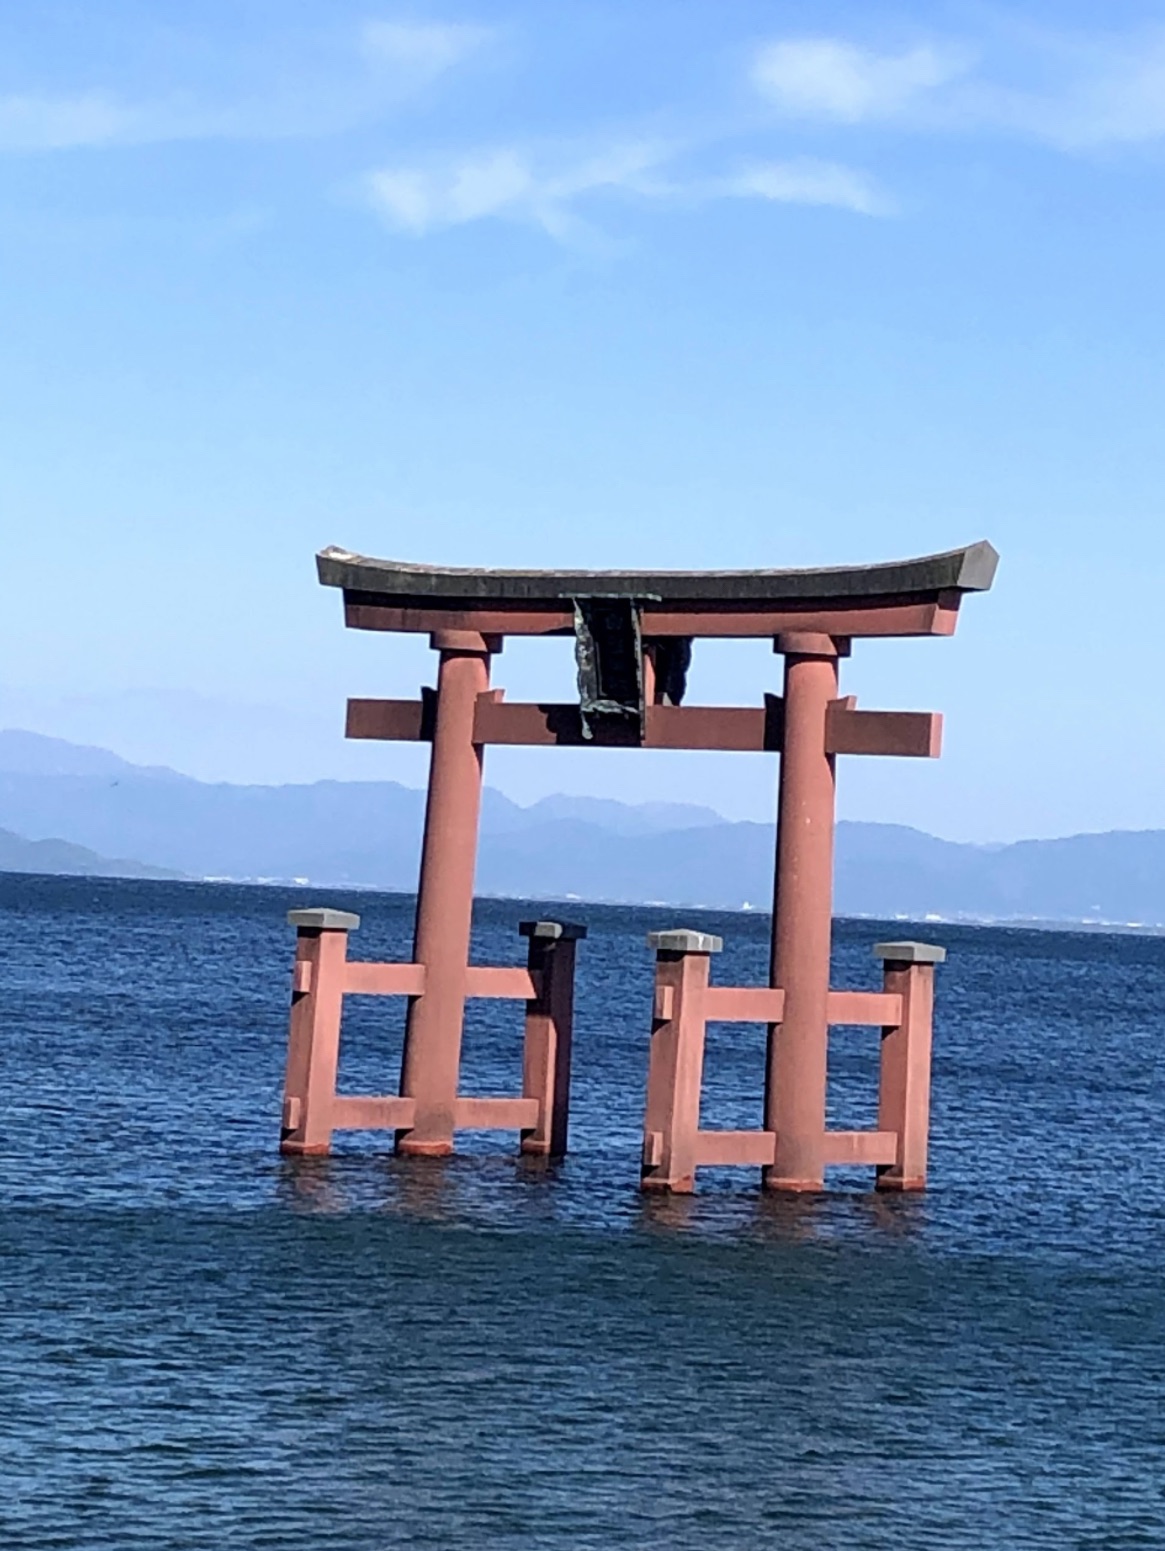 海中鳥居 Trip Com 琵琶湖の旅のブログ